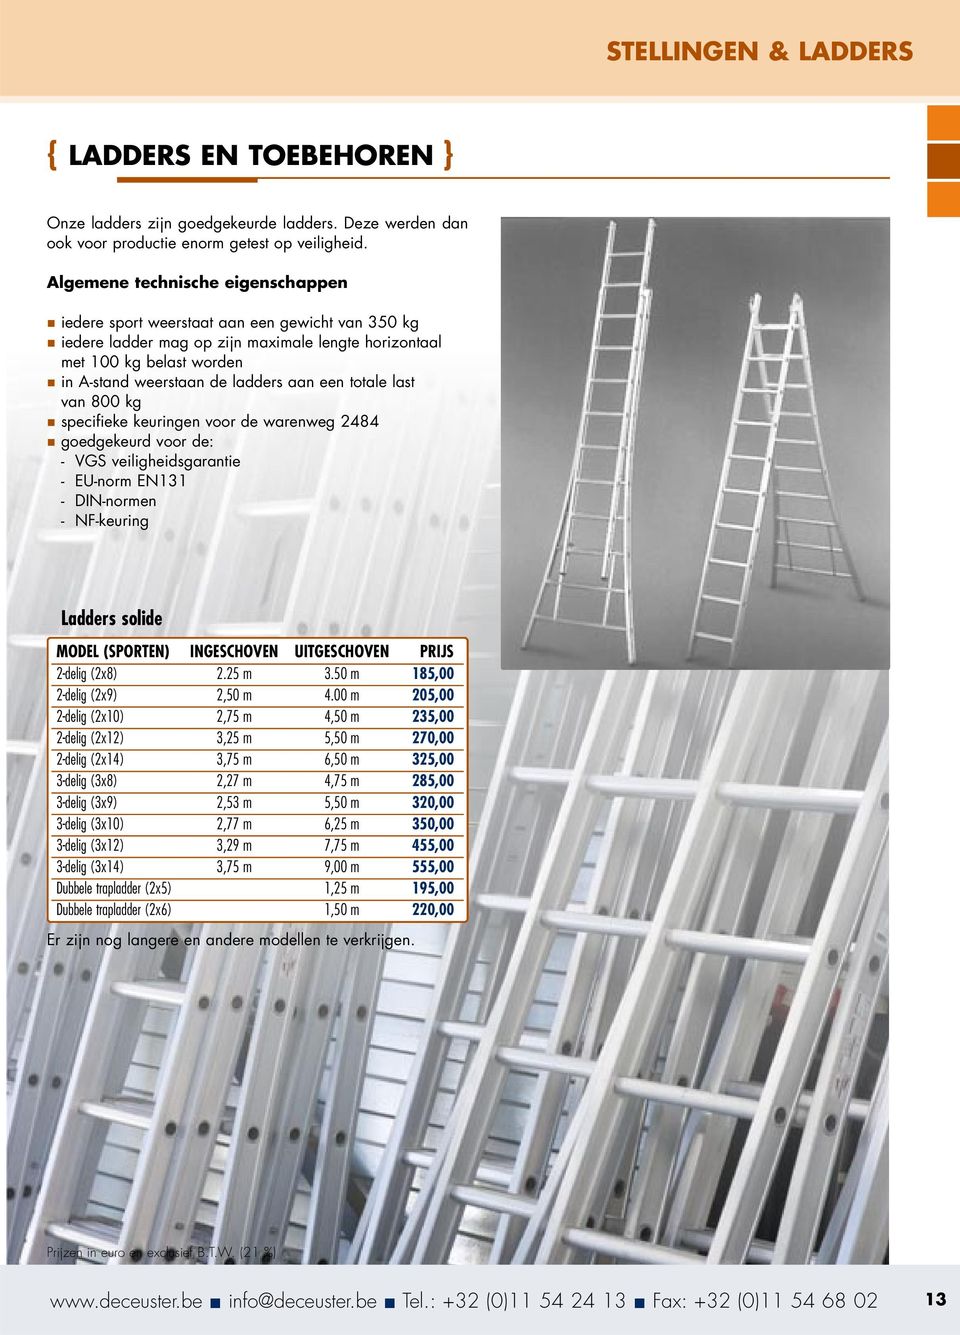 een totale last van 800 kg specifieke keuringen voor de warenweg 2484 goedgekeurd voor de: - VGS veiligheidsgarantie - EU-norm EN131 - DIN-normen - NF-keuring Ladders solide MODEL (SPORTEN)